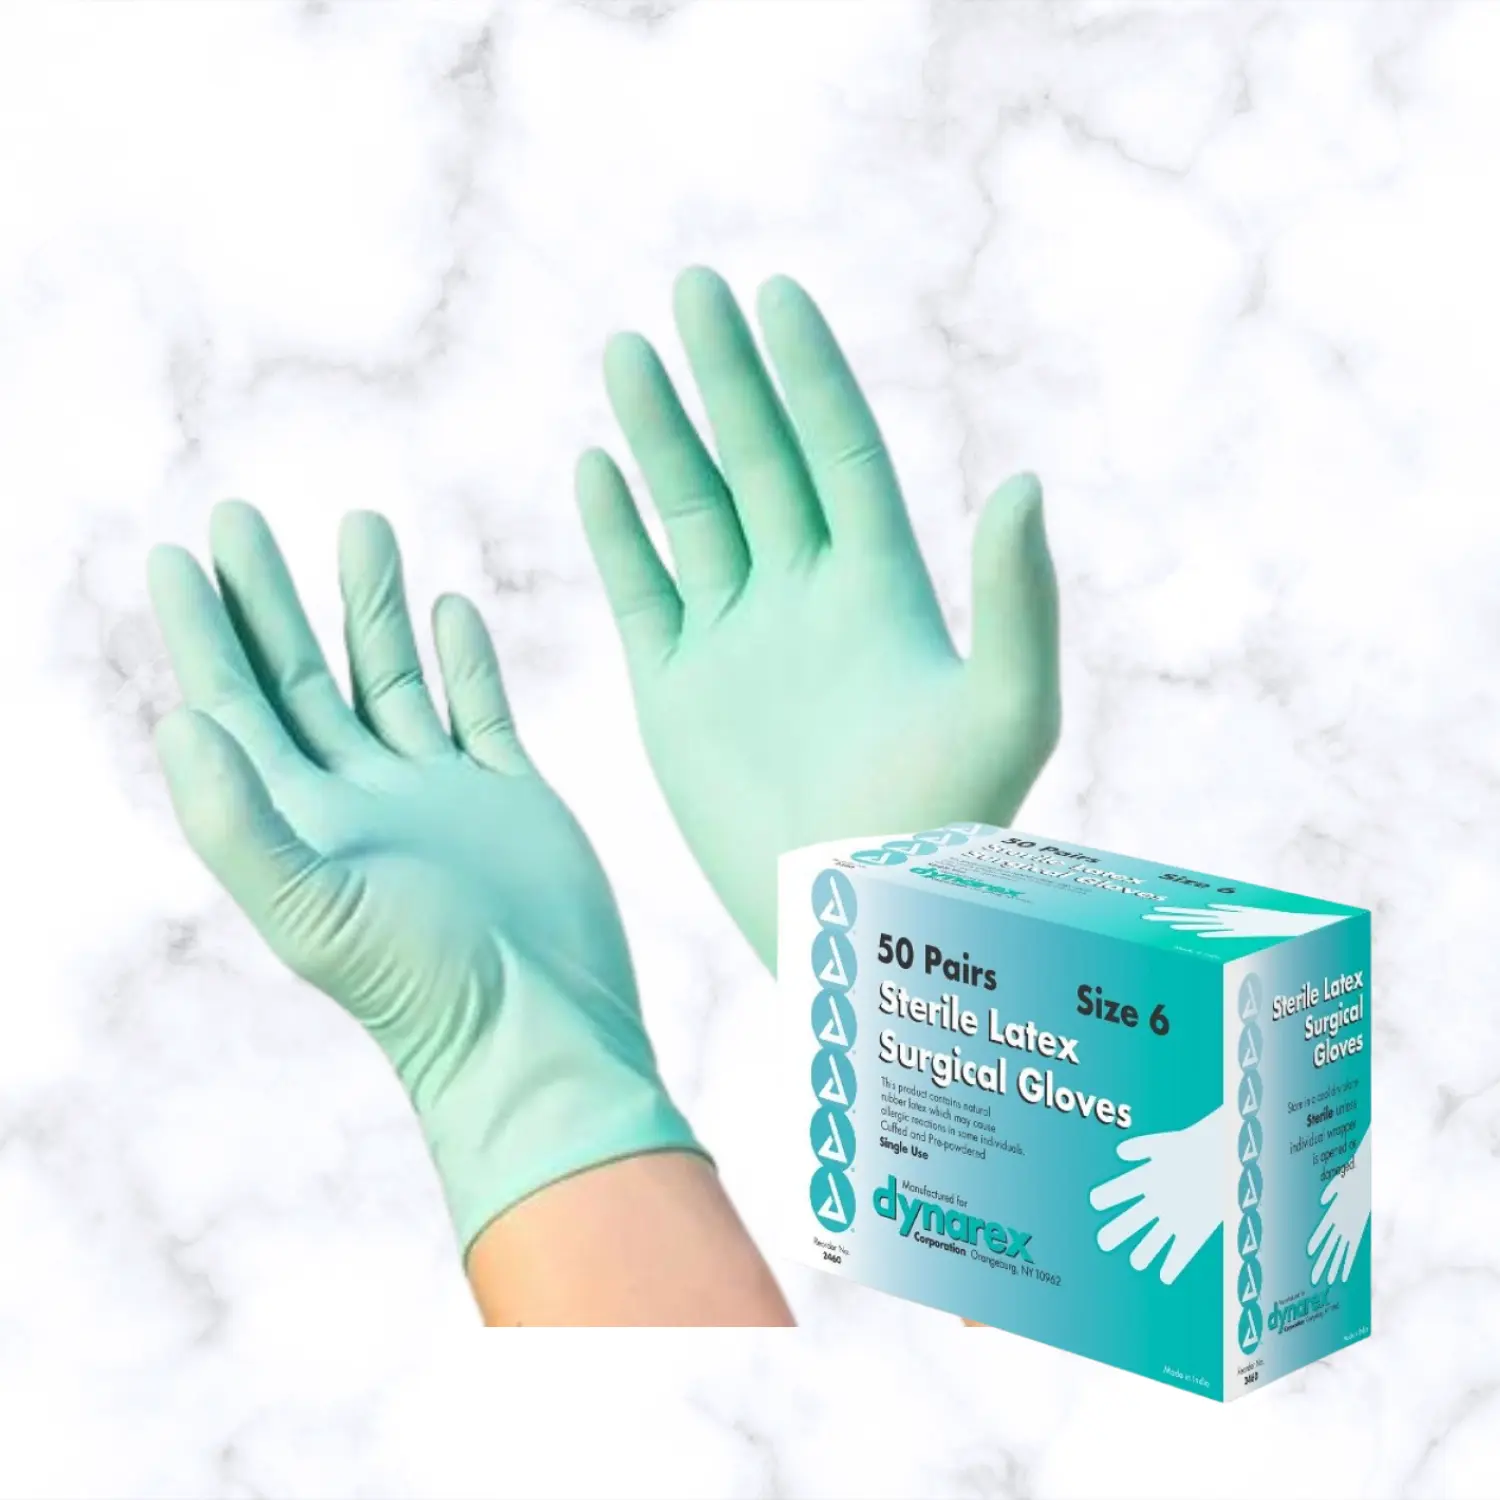 Surgical Gloves Nitrile Gloves images